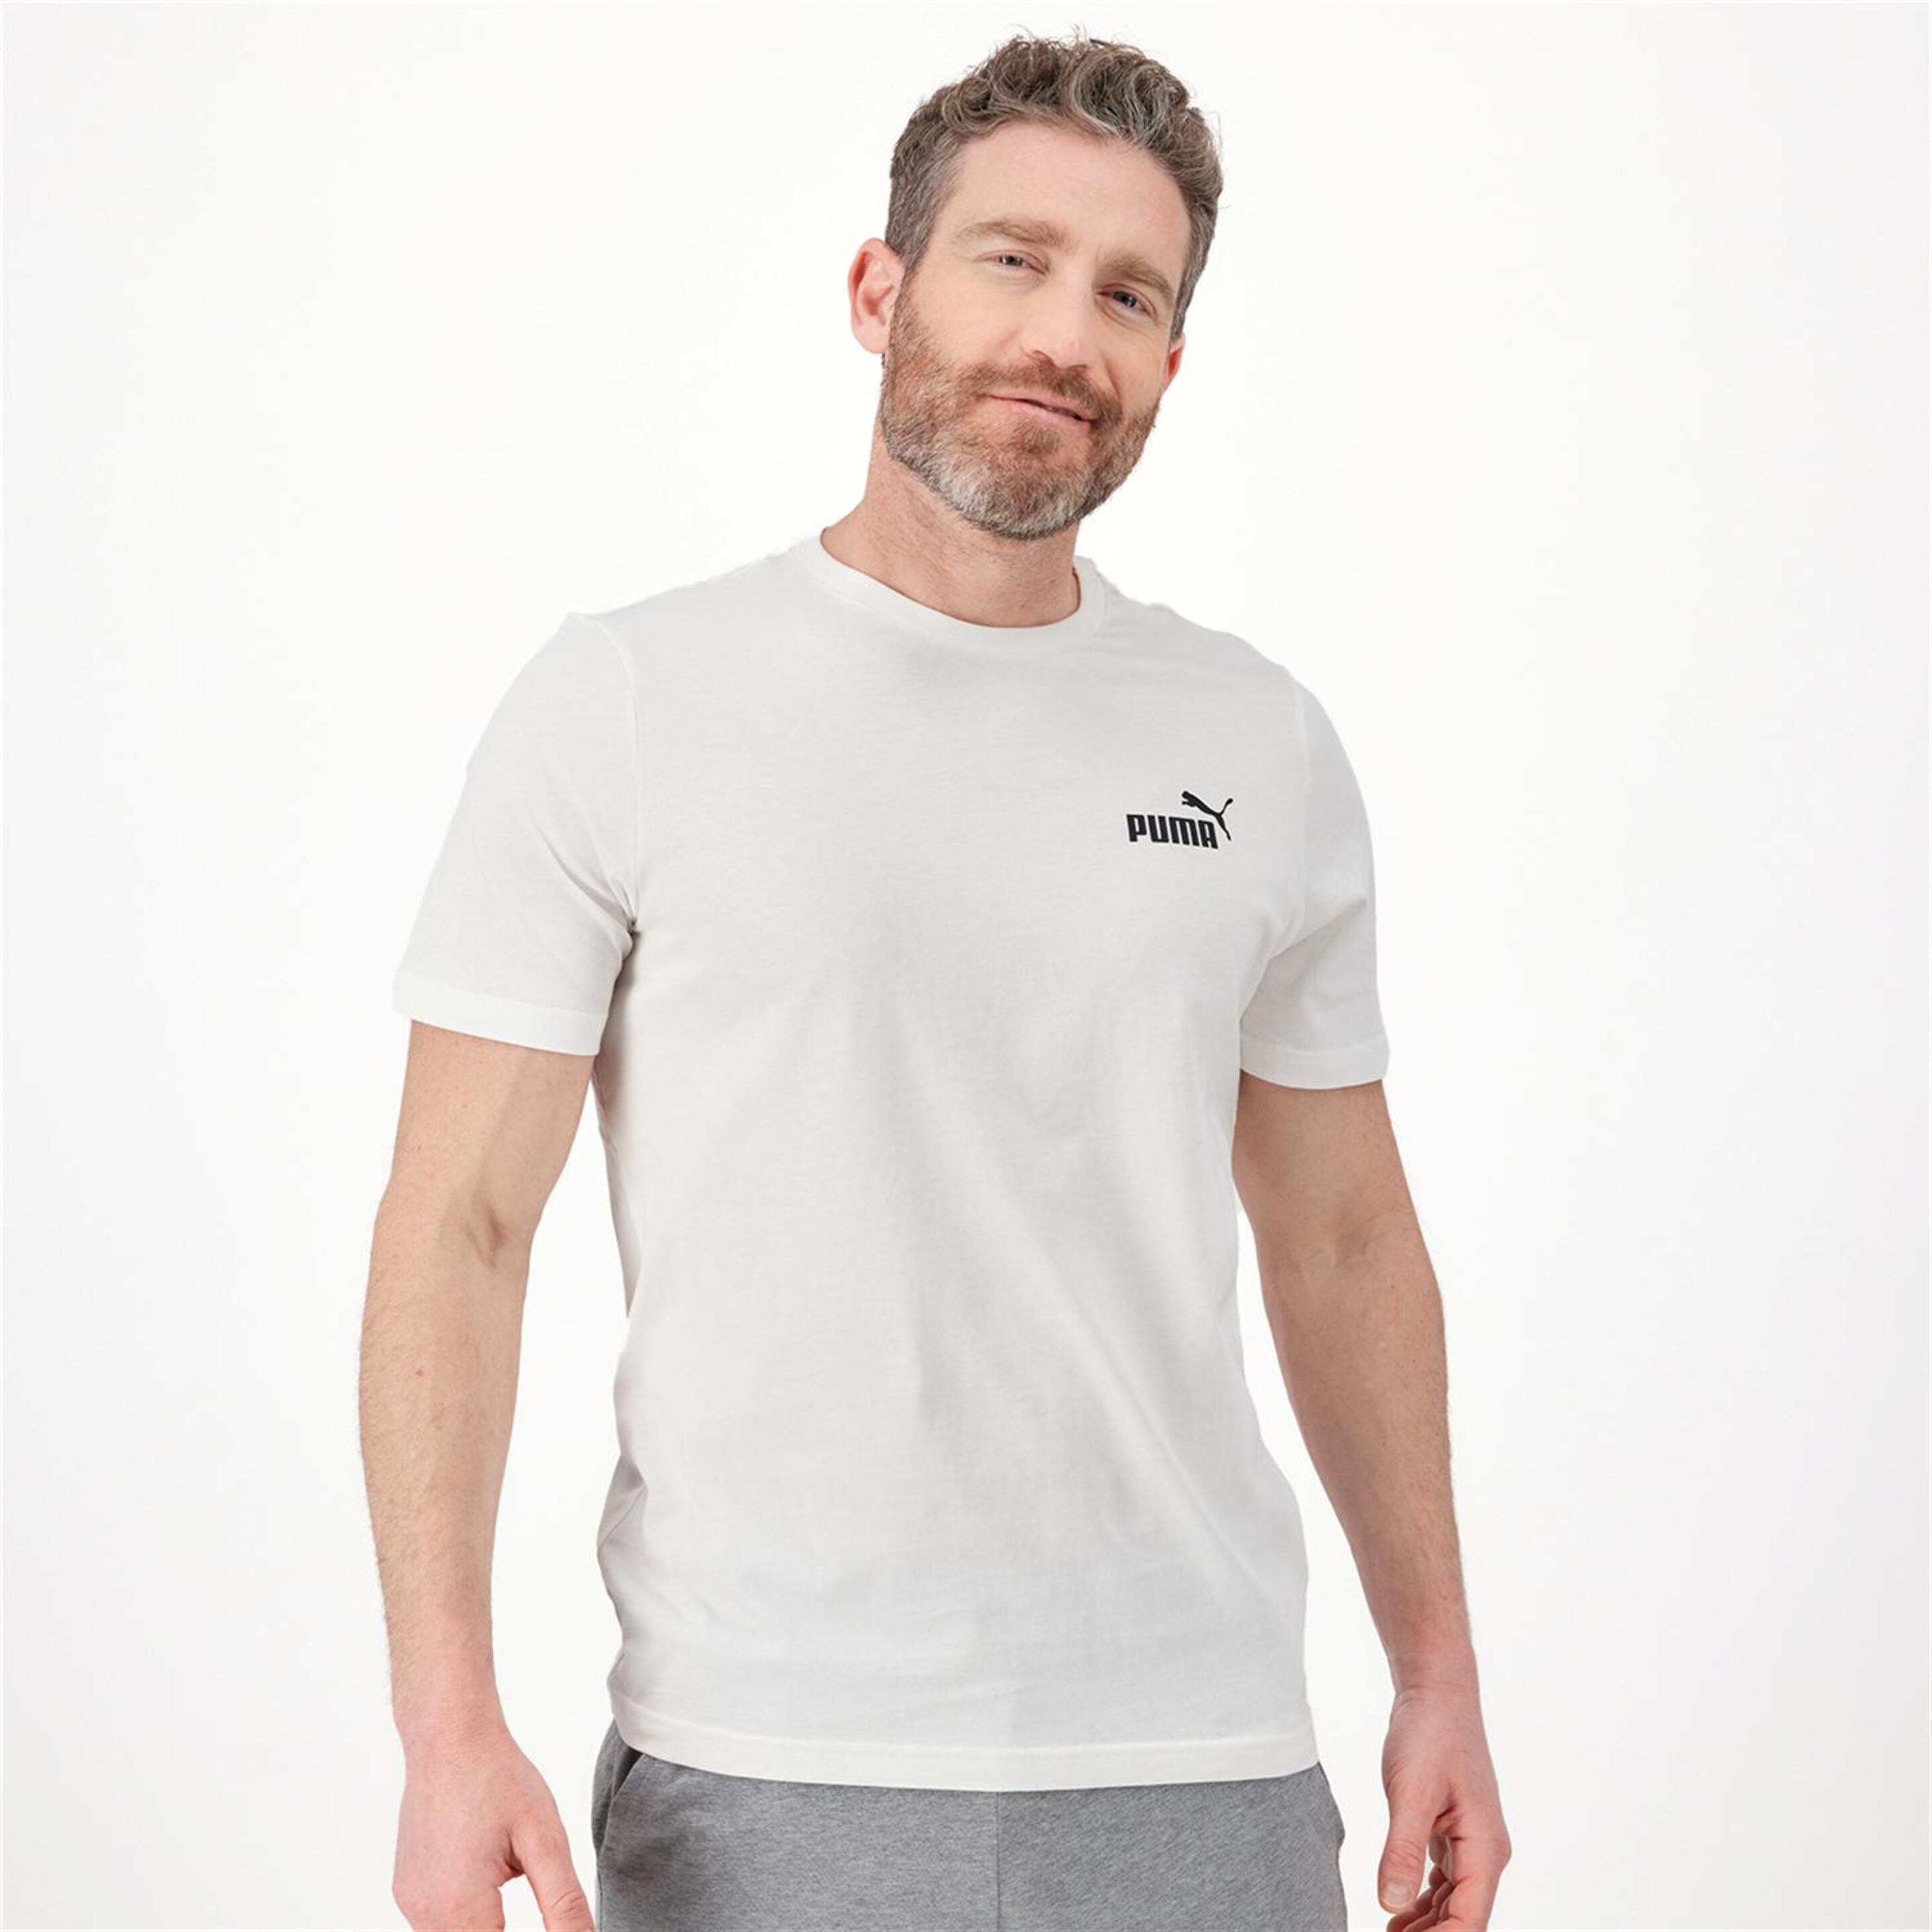 Puma Small Logo - blanco - Camiseta Hombre